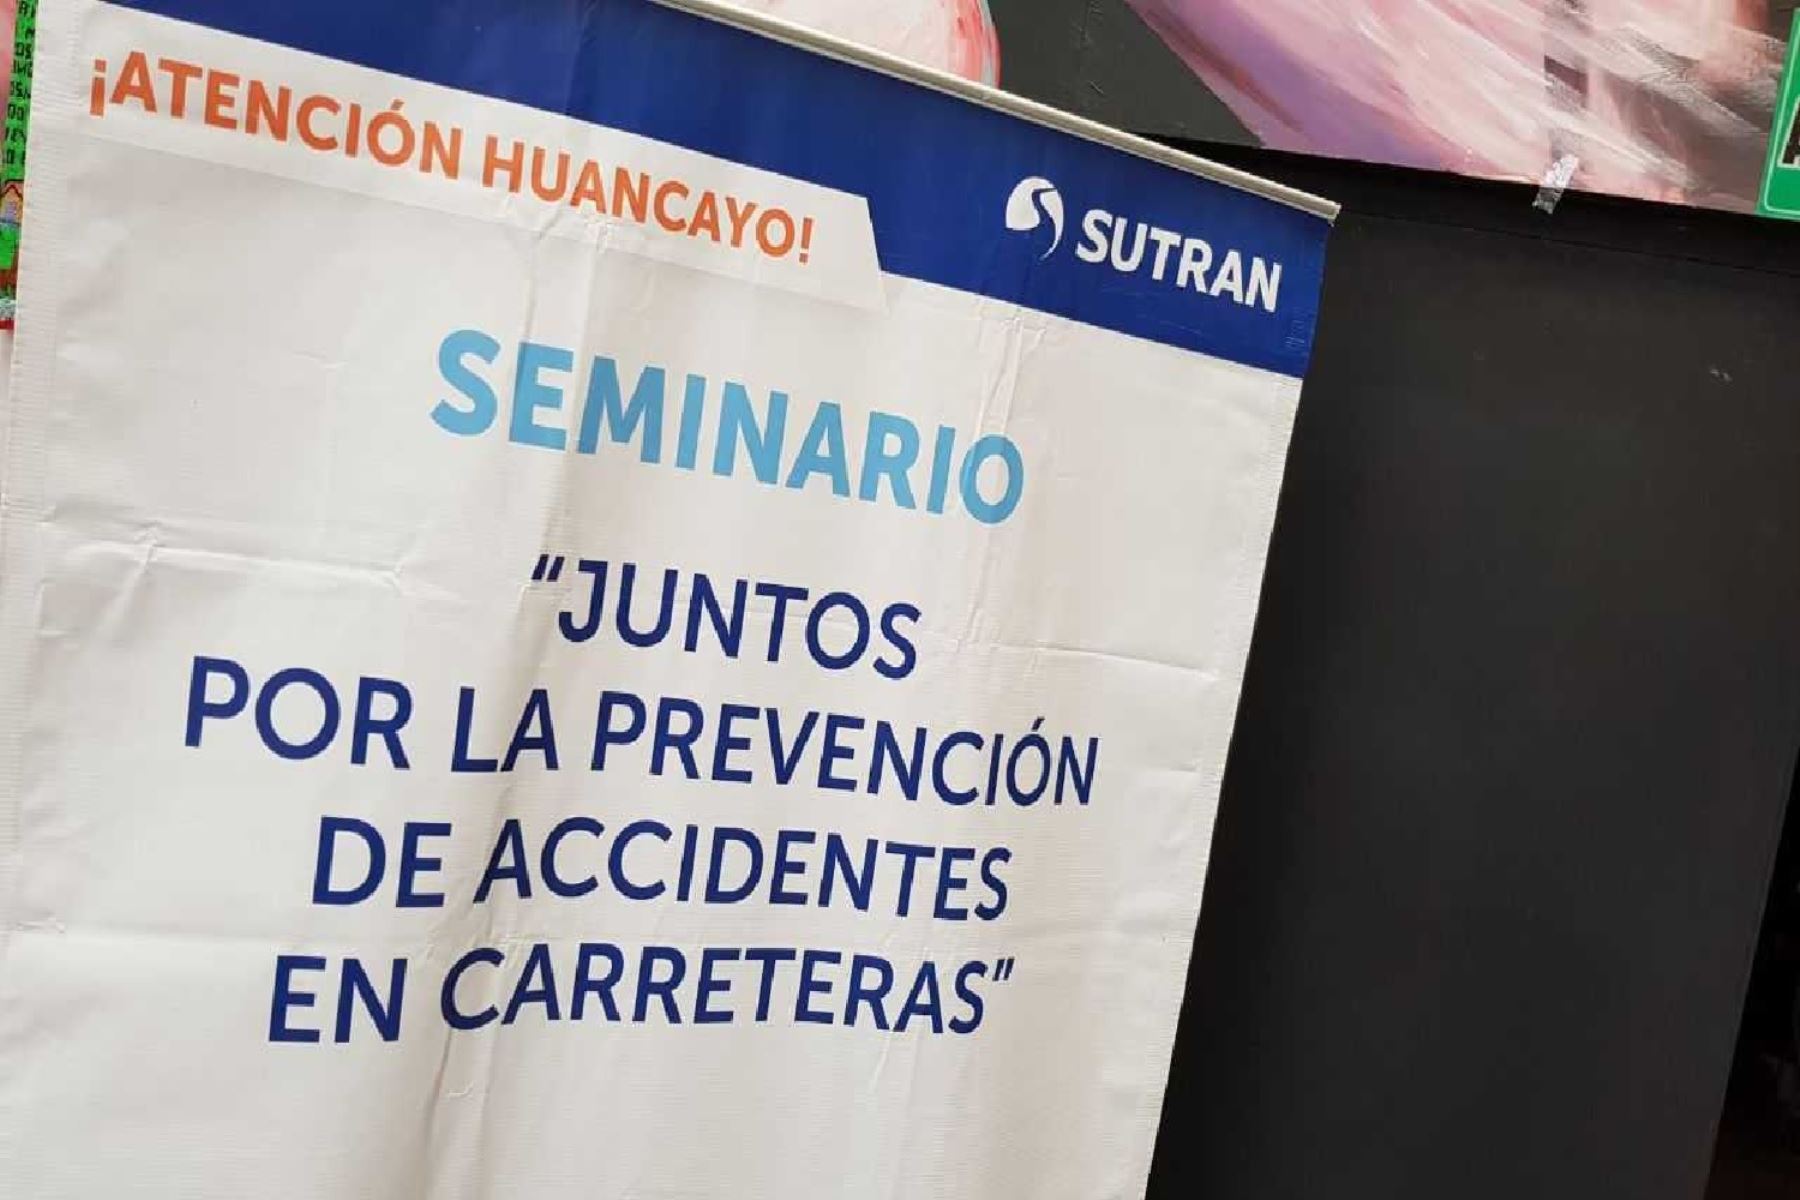 La primera edición de "Sutran descentrraliado se realizó el último sábado en la provincia de Huancayo, región Junín, debido a su proximidad a la Carretera Central.